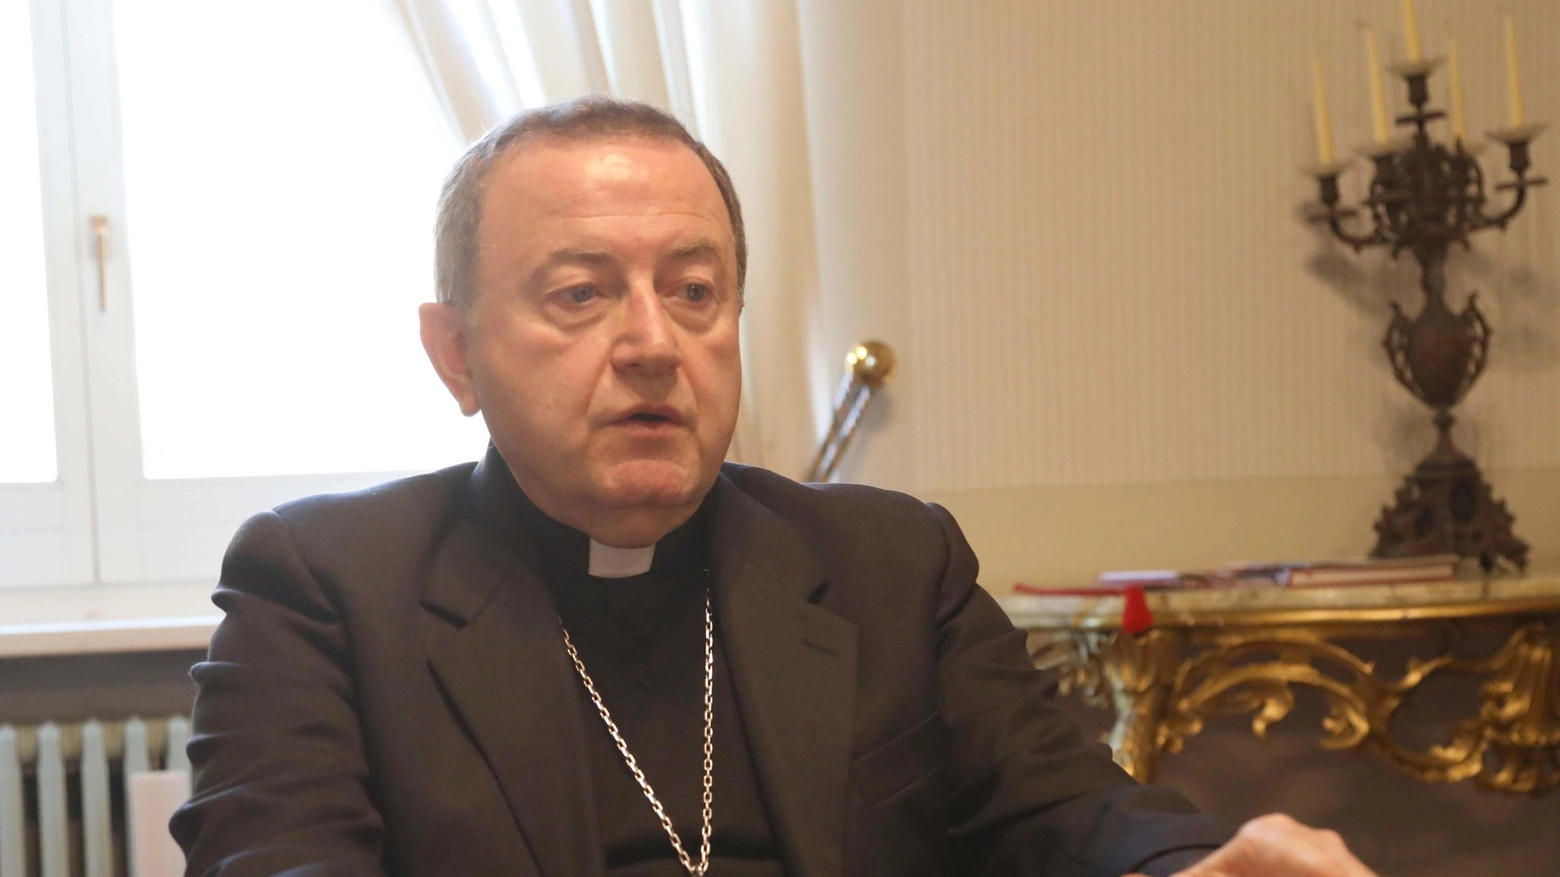 L’arcivescovo incontrerà il Papa: "Gli parlerò della perdita della fede di molti giovani e adulti ravennati"